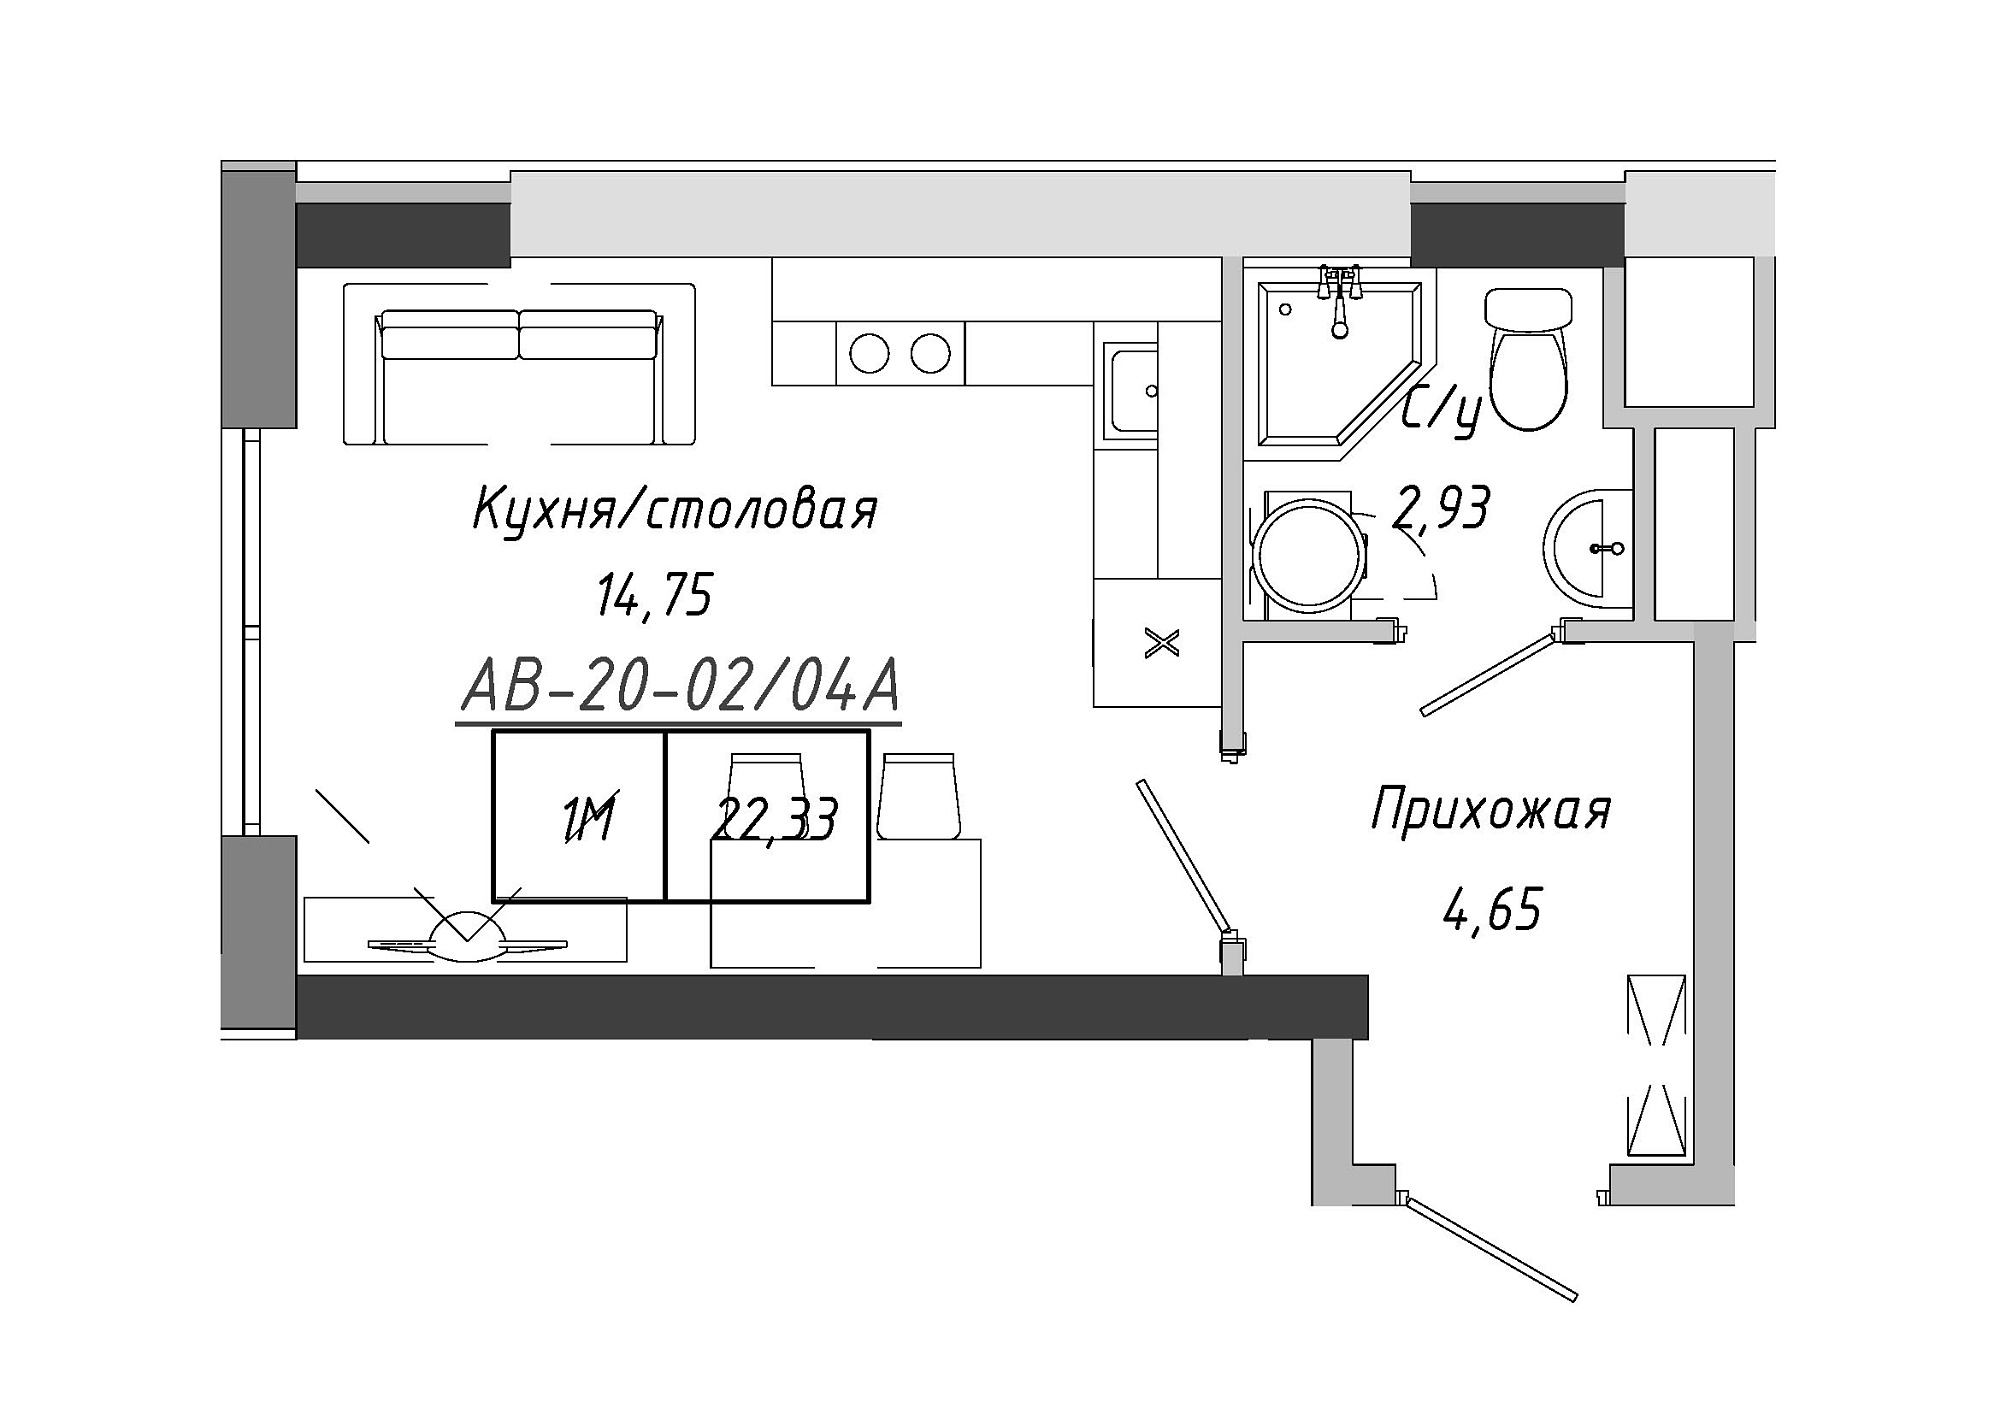 Планировка Smart-квартира площей 22.33м2, AB-20-02/0004а.